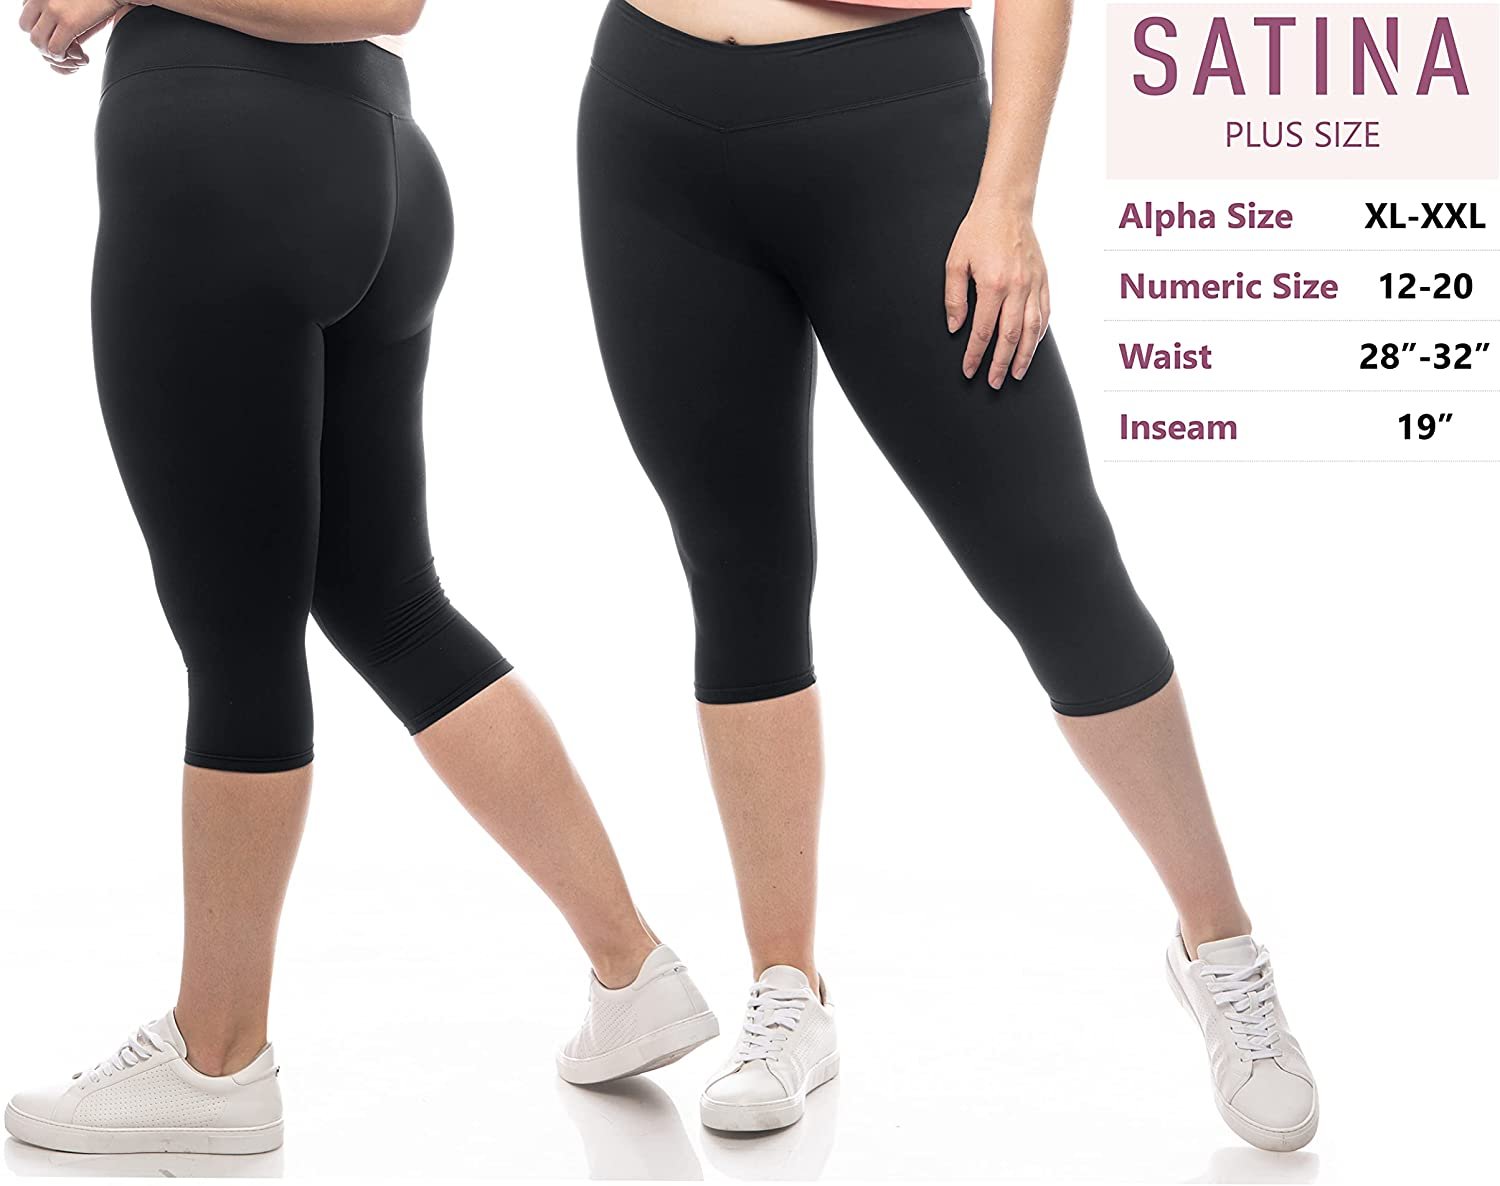 SATINA High Waisted Capri Leggings for Women - Capri Pants for Women - High Waist for Tummy Control - Black Capri Leggings for Yoga |3 Inch Waistband (One Size, Black)